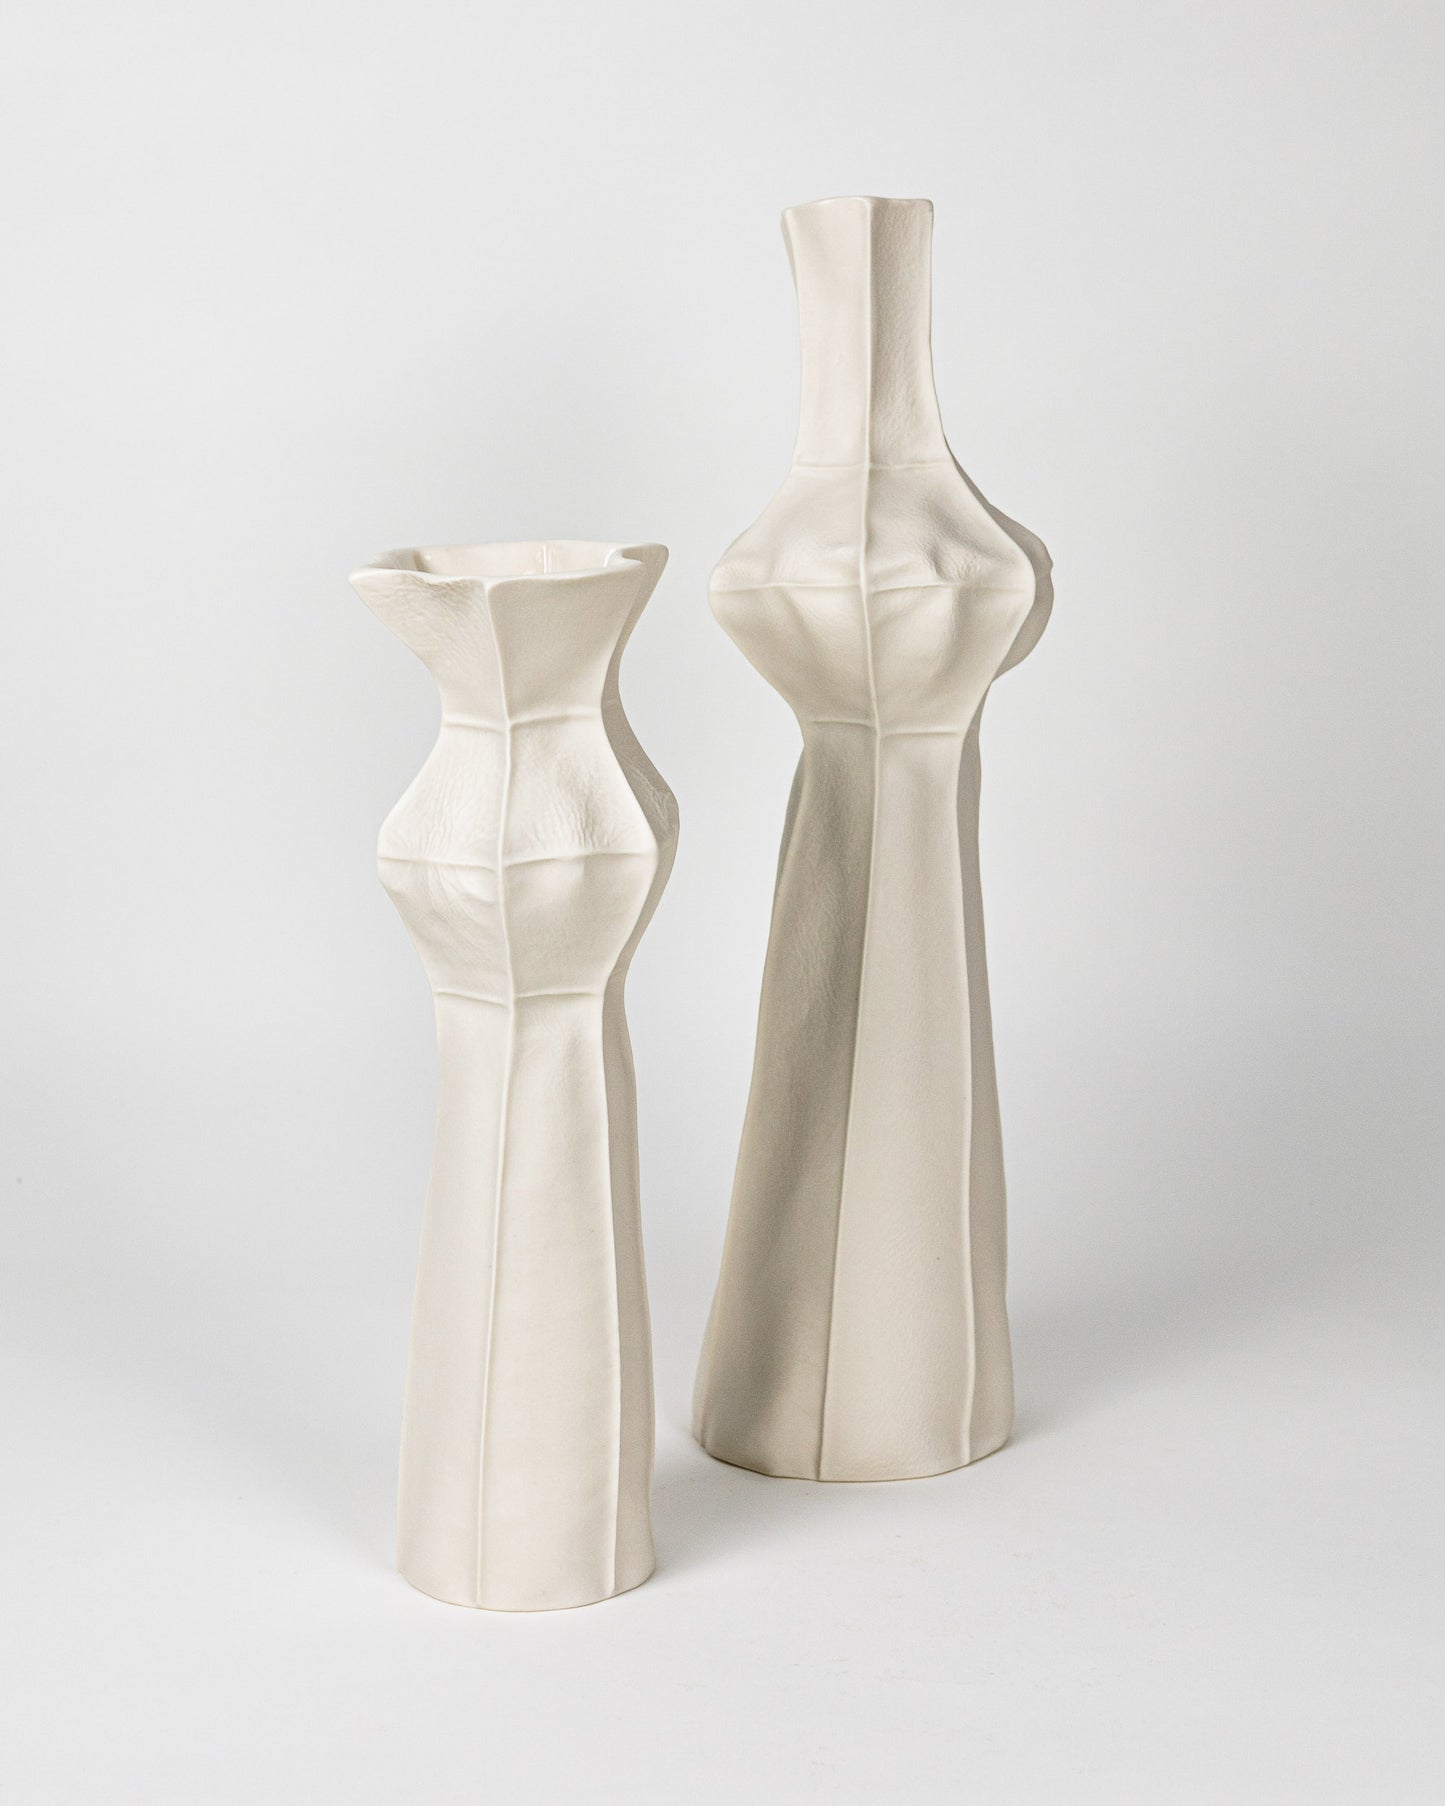 Pair of Kawa Vases 06 & 07